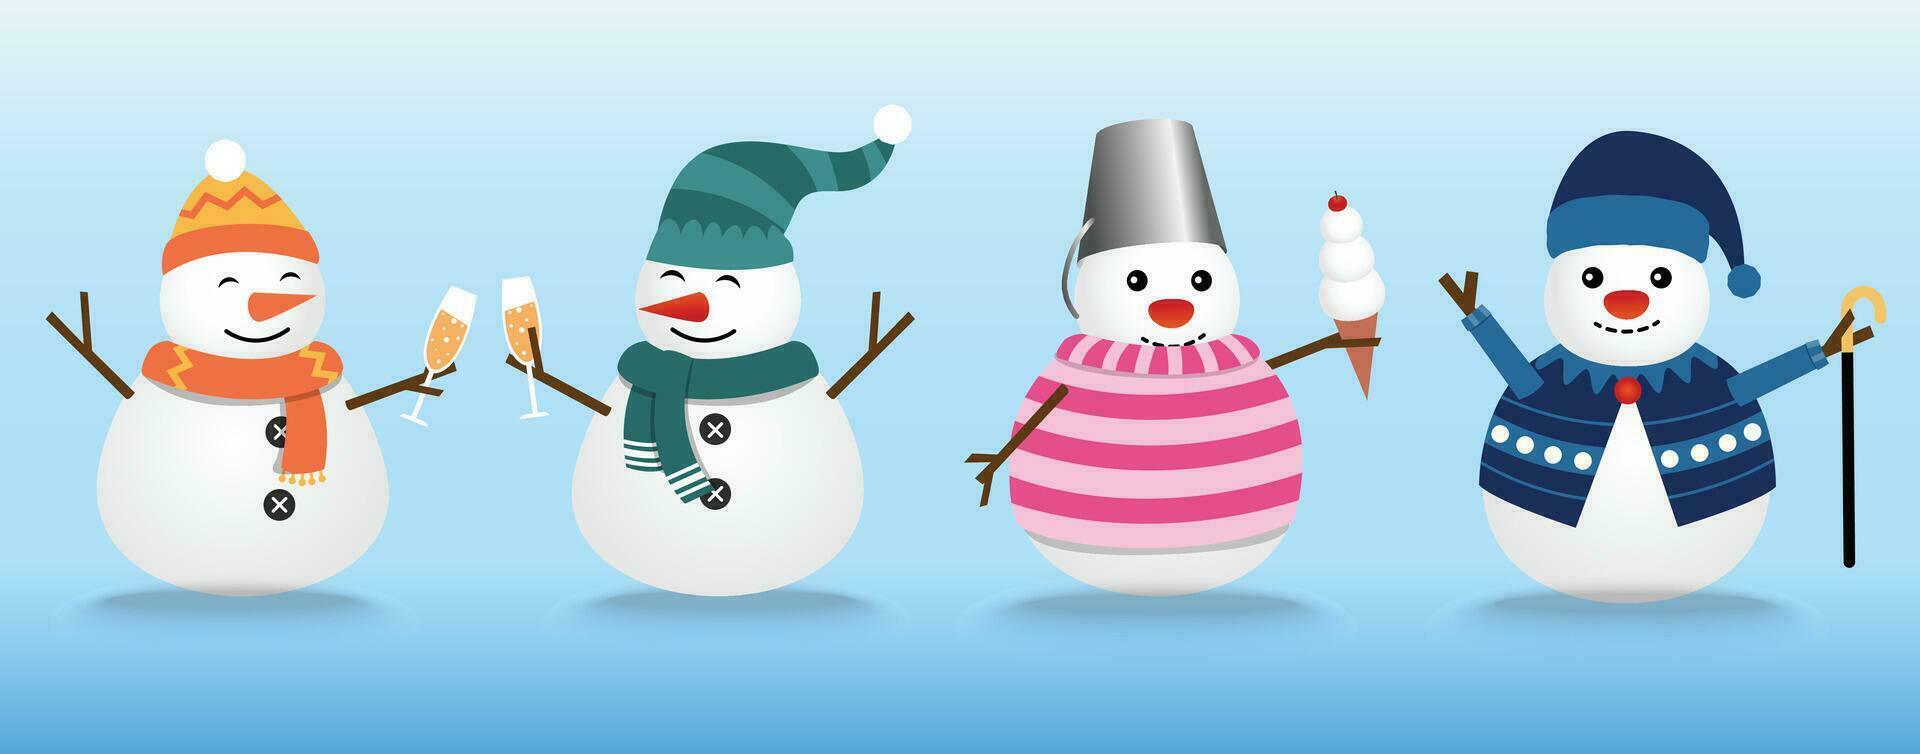 a coleção do bonecos de neve desgasta a inverno tema. gráfico recurso sobre inverno e Natal para contente, boneco de neve com champanhe, gelo creme, e grudar. vetor ilustração.